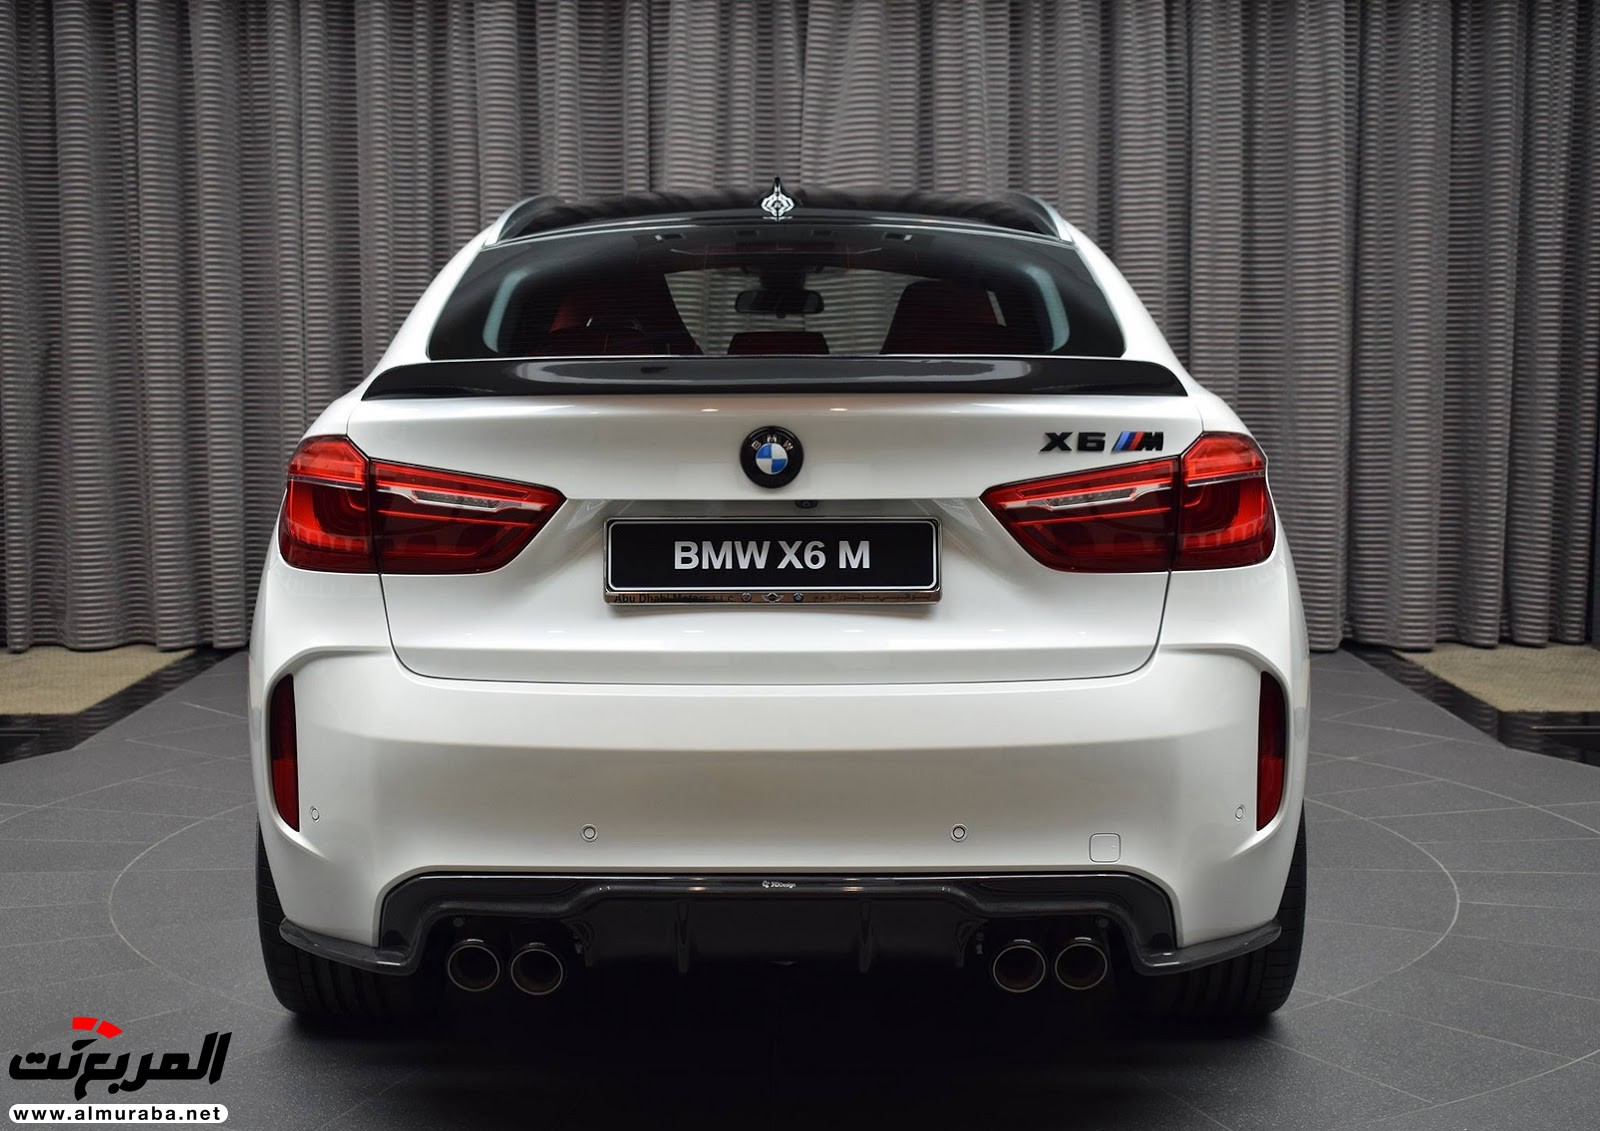 "بي إم دبليو" X6 M عالية الأداء معدّلة بتصاميم 3D معروضة بأبو ظبي BMW 93